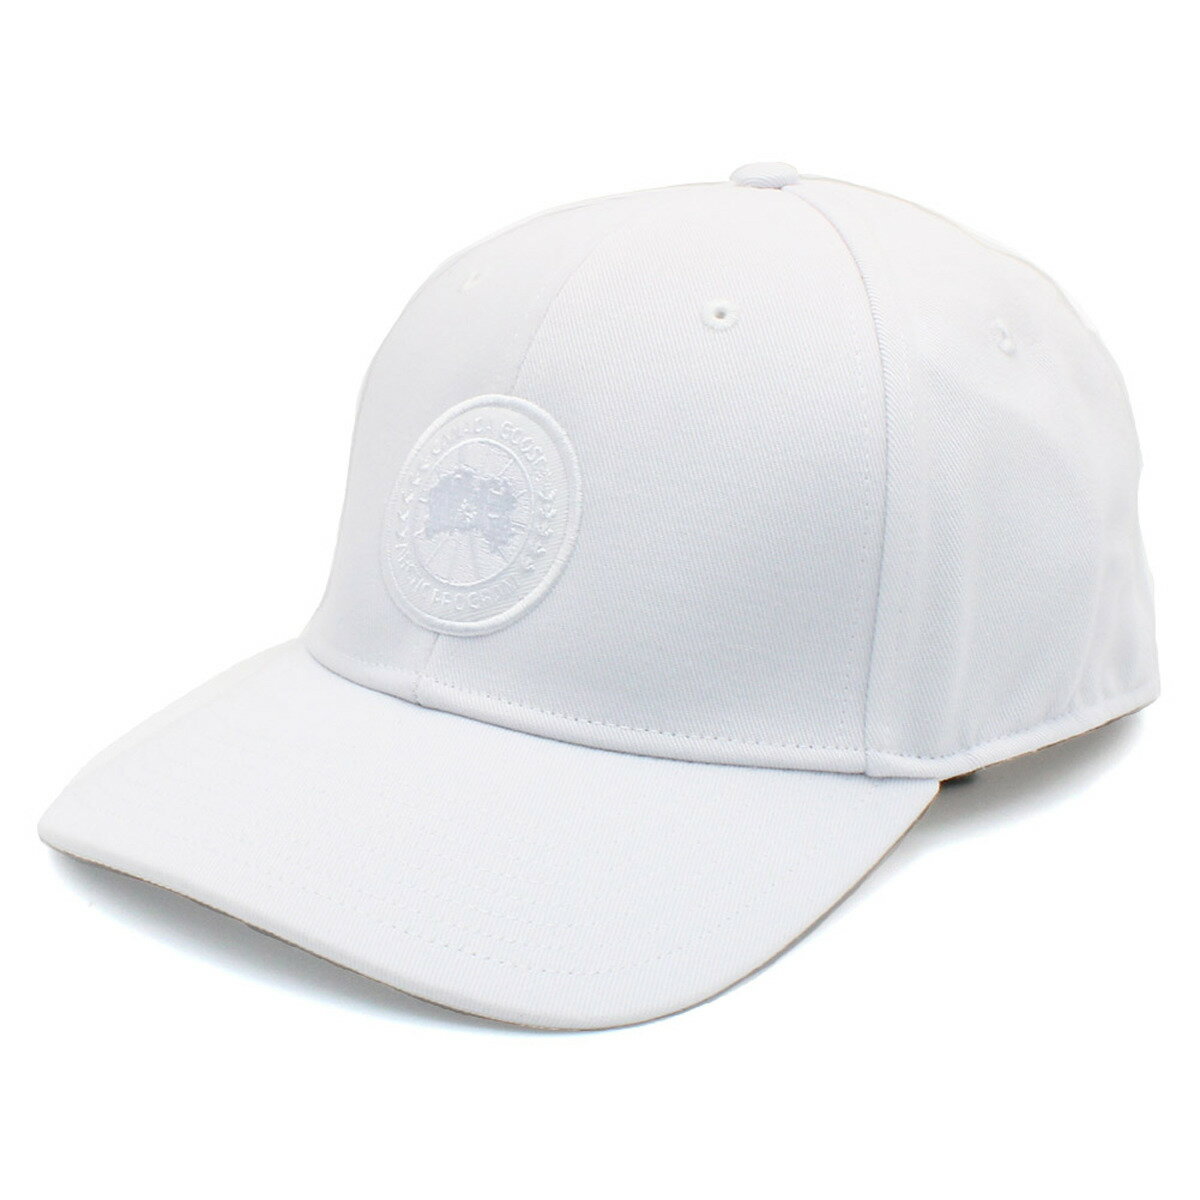 カナダグース CANADA GOOSE 帽子 キャップ 5481U 25 メンズ レディース ホワイト